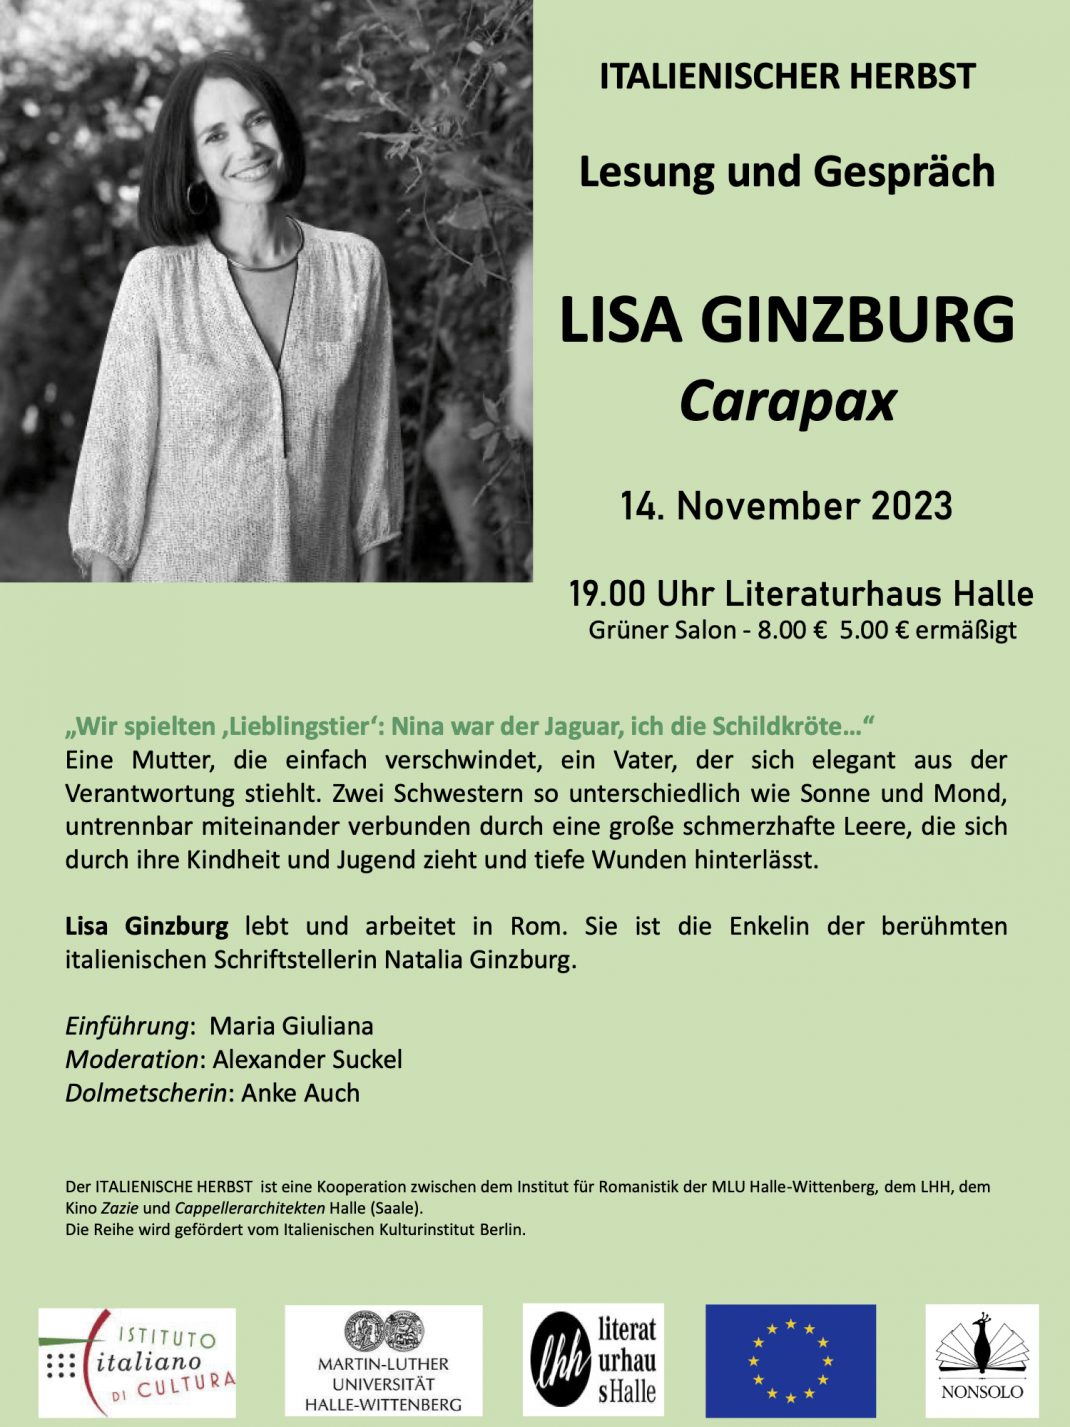 Lesung und Gespräch mit Lisa Ginzburg